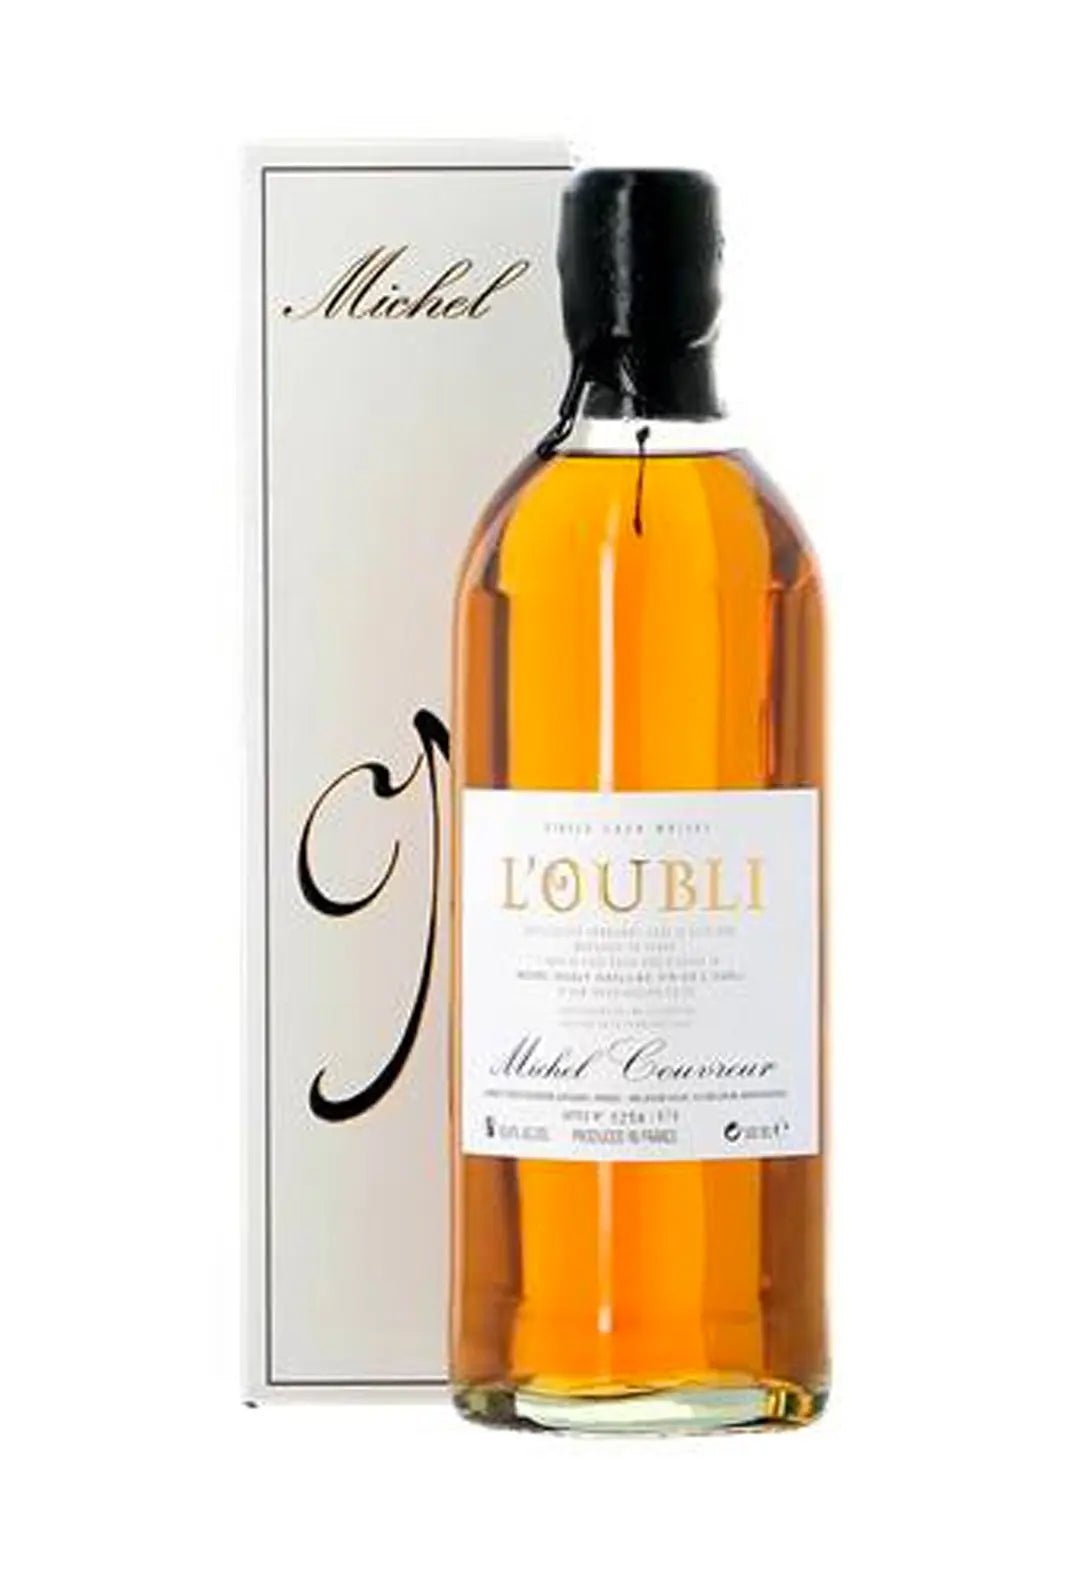 Michel Couvreur L'Oubli 2009 Single Malt Whisky 45% 500ml - Whisky > Single Malt, Whisky - Liquor Wine Cave